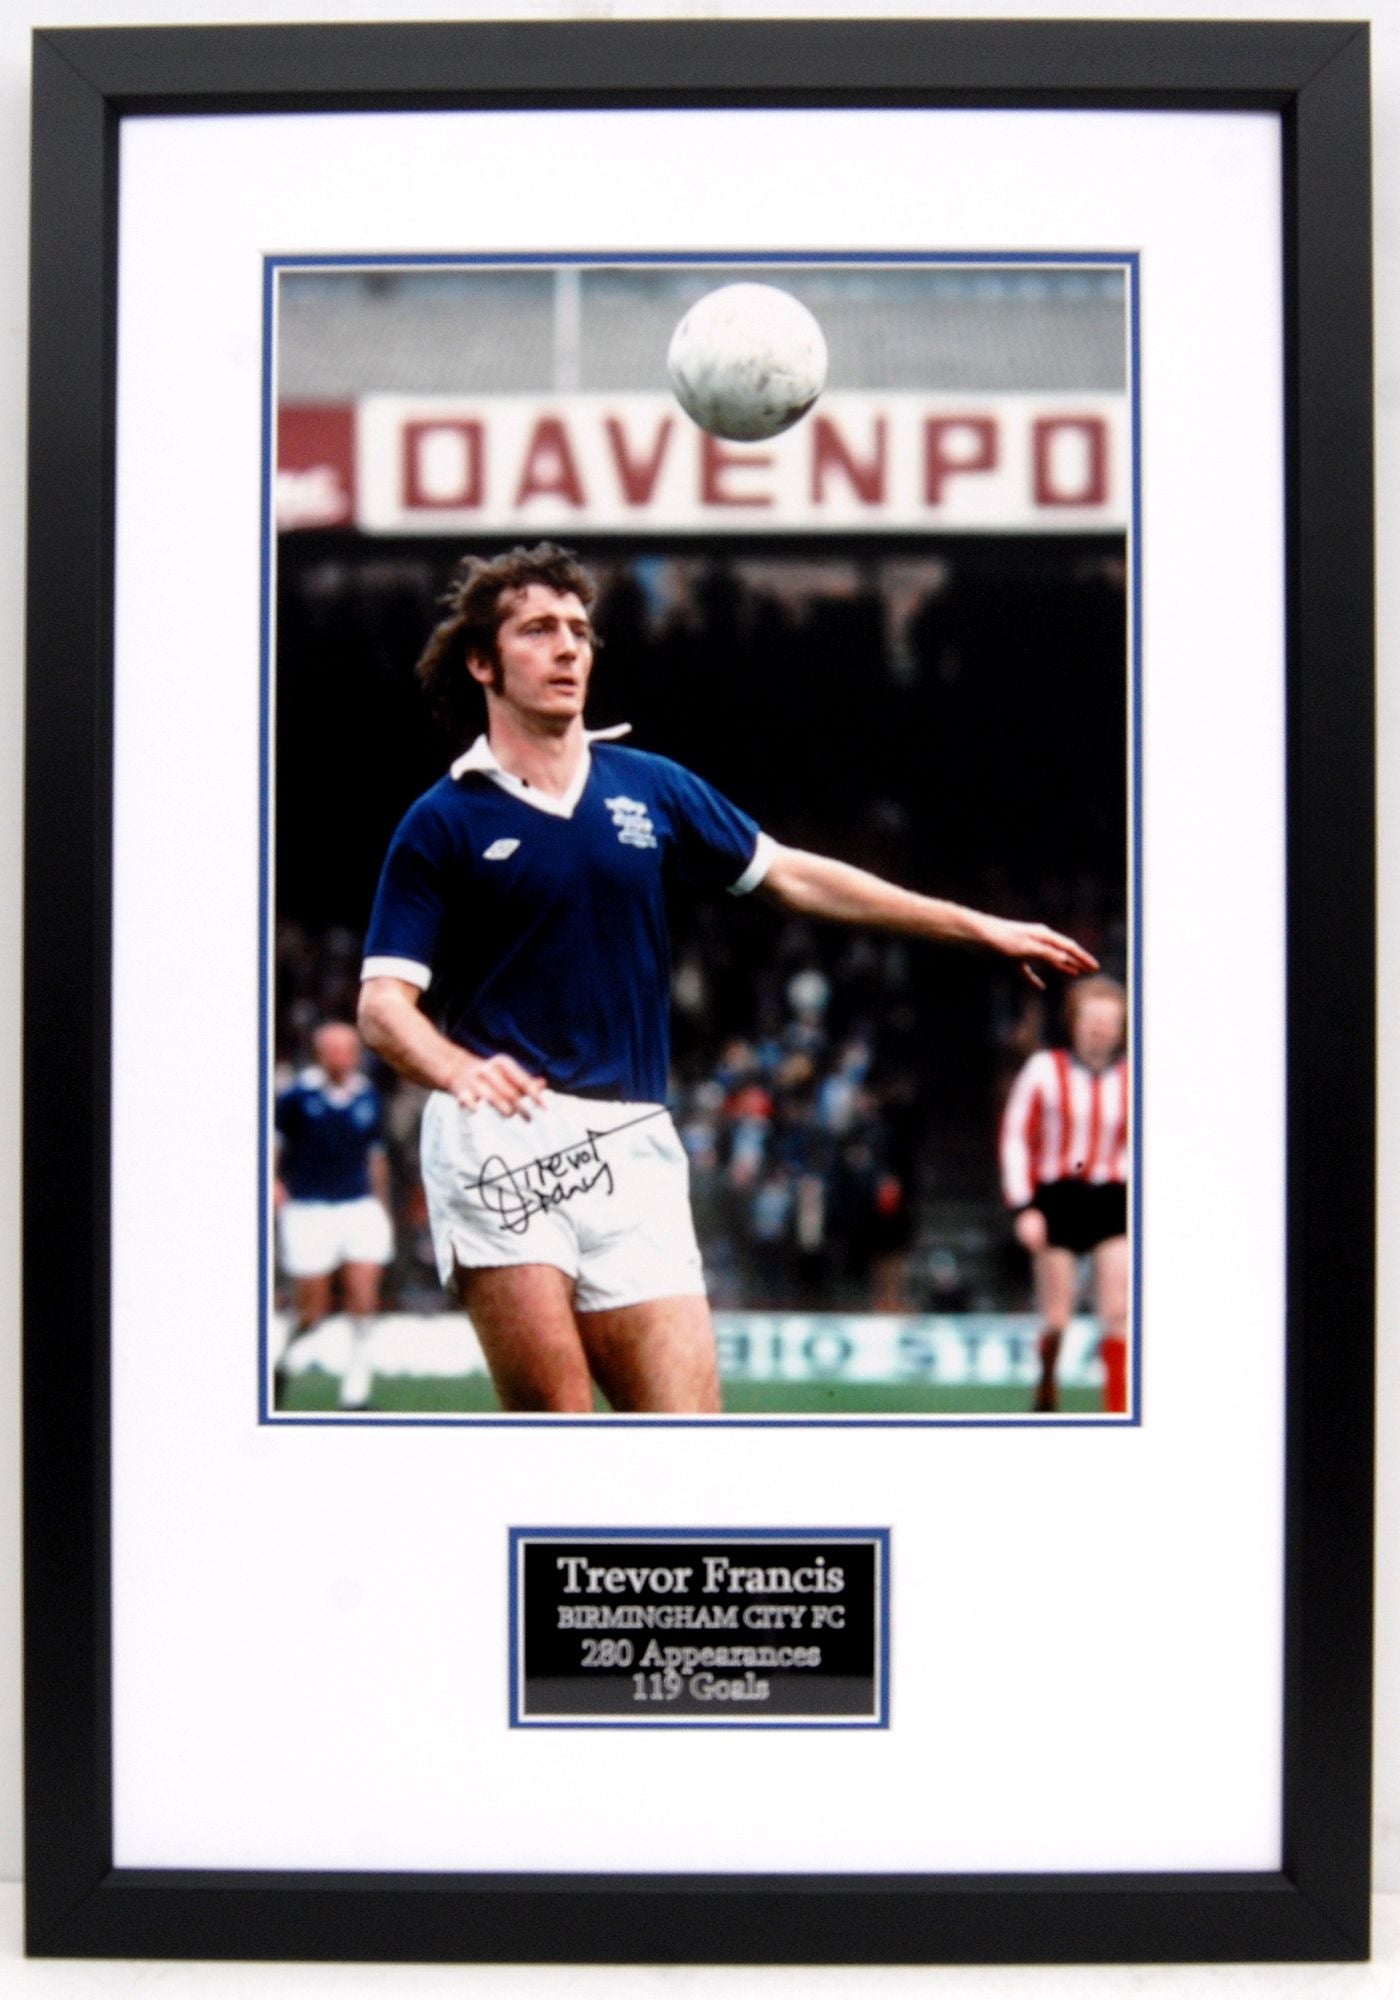 Trevor Francis Signed Frame - "Trevor Francis is a blue..."